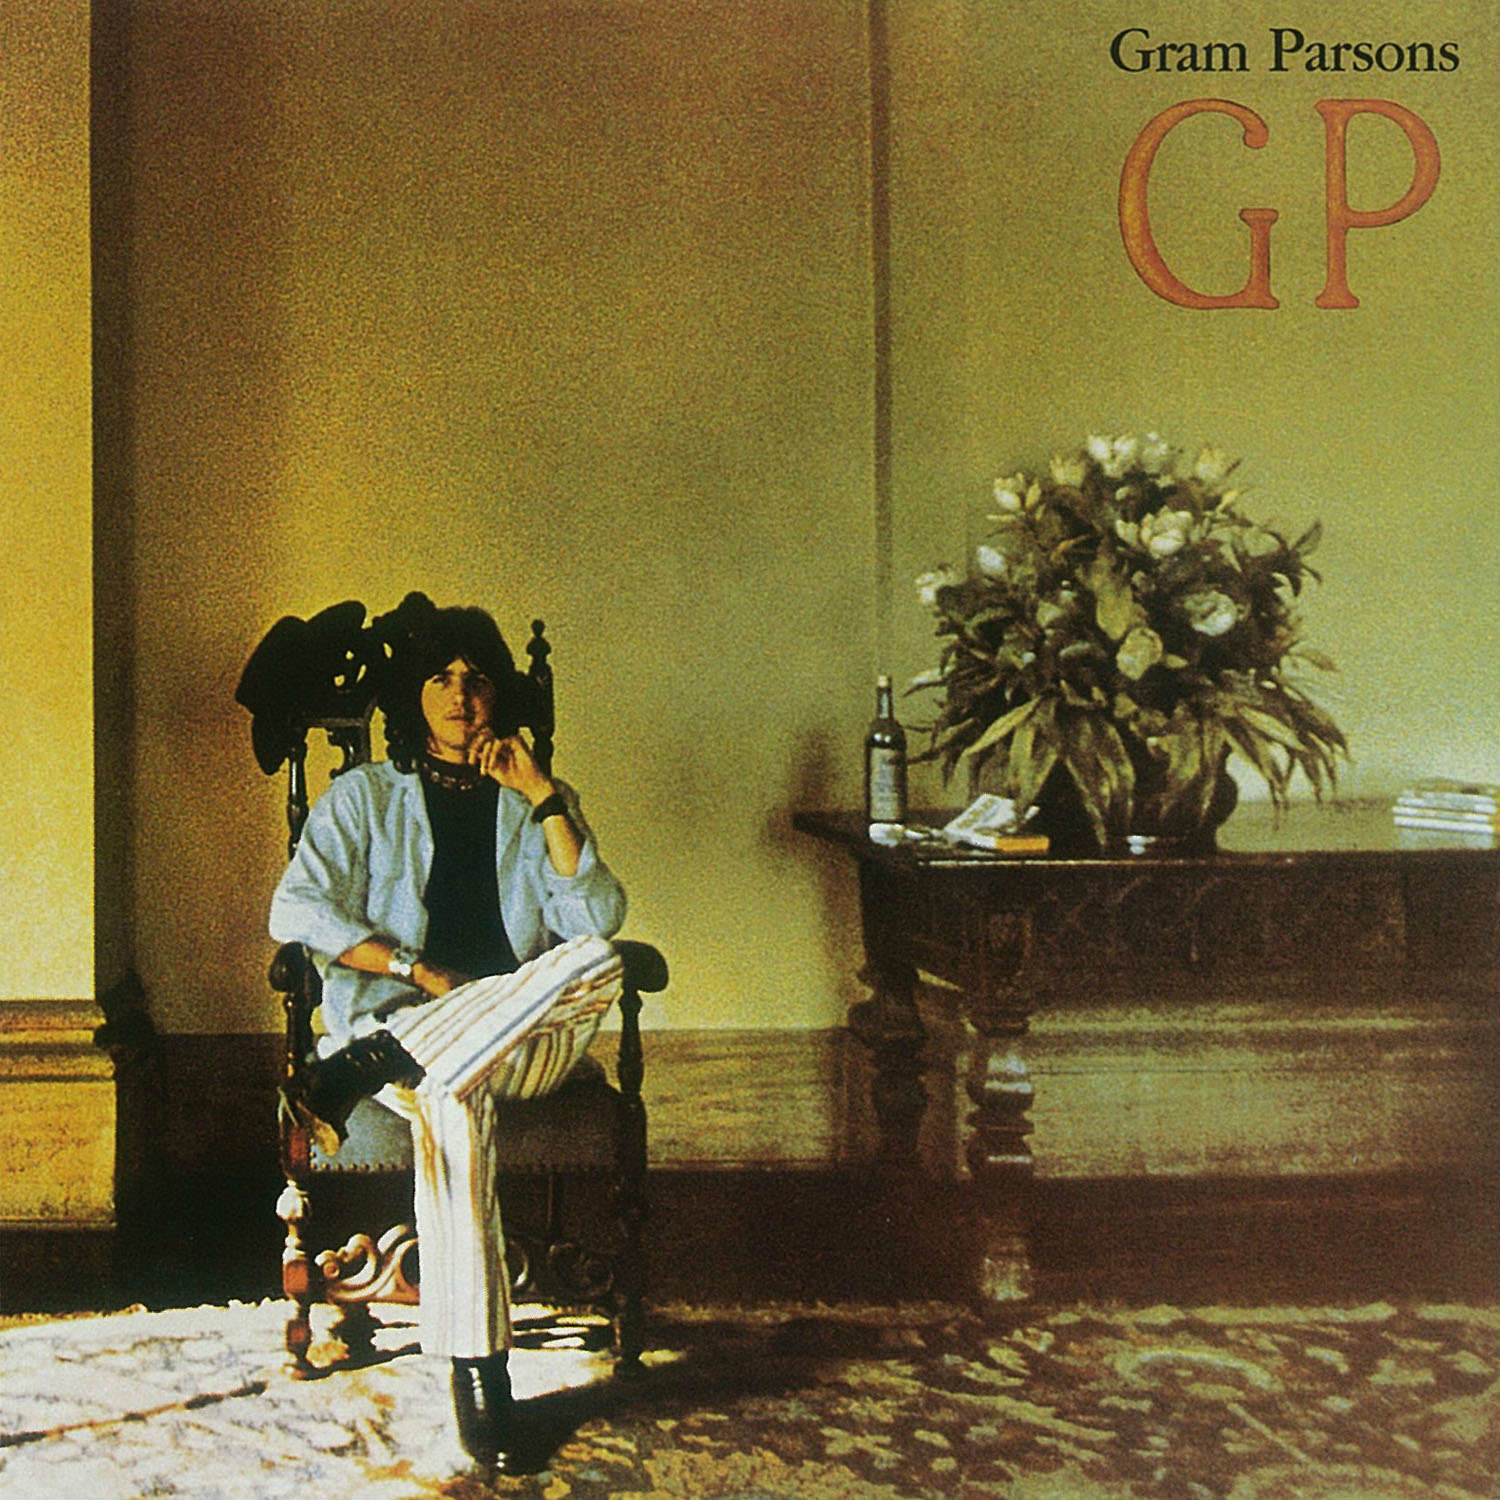 グラム・パーソンズ（Gram Parsons）の生涯――アメリカーナを確立させた立役者 | Mikiki by TOWER RECORDS